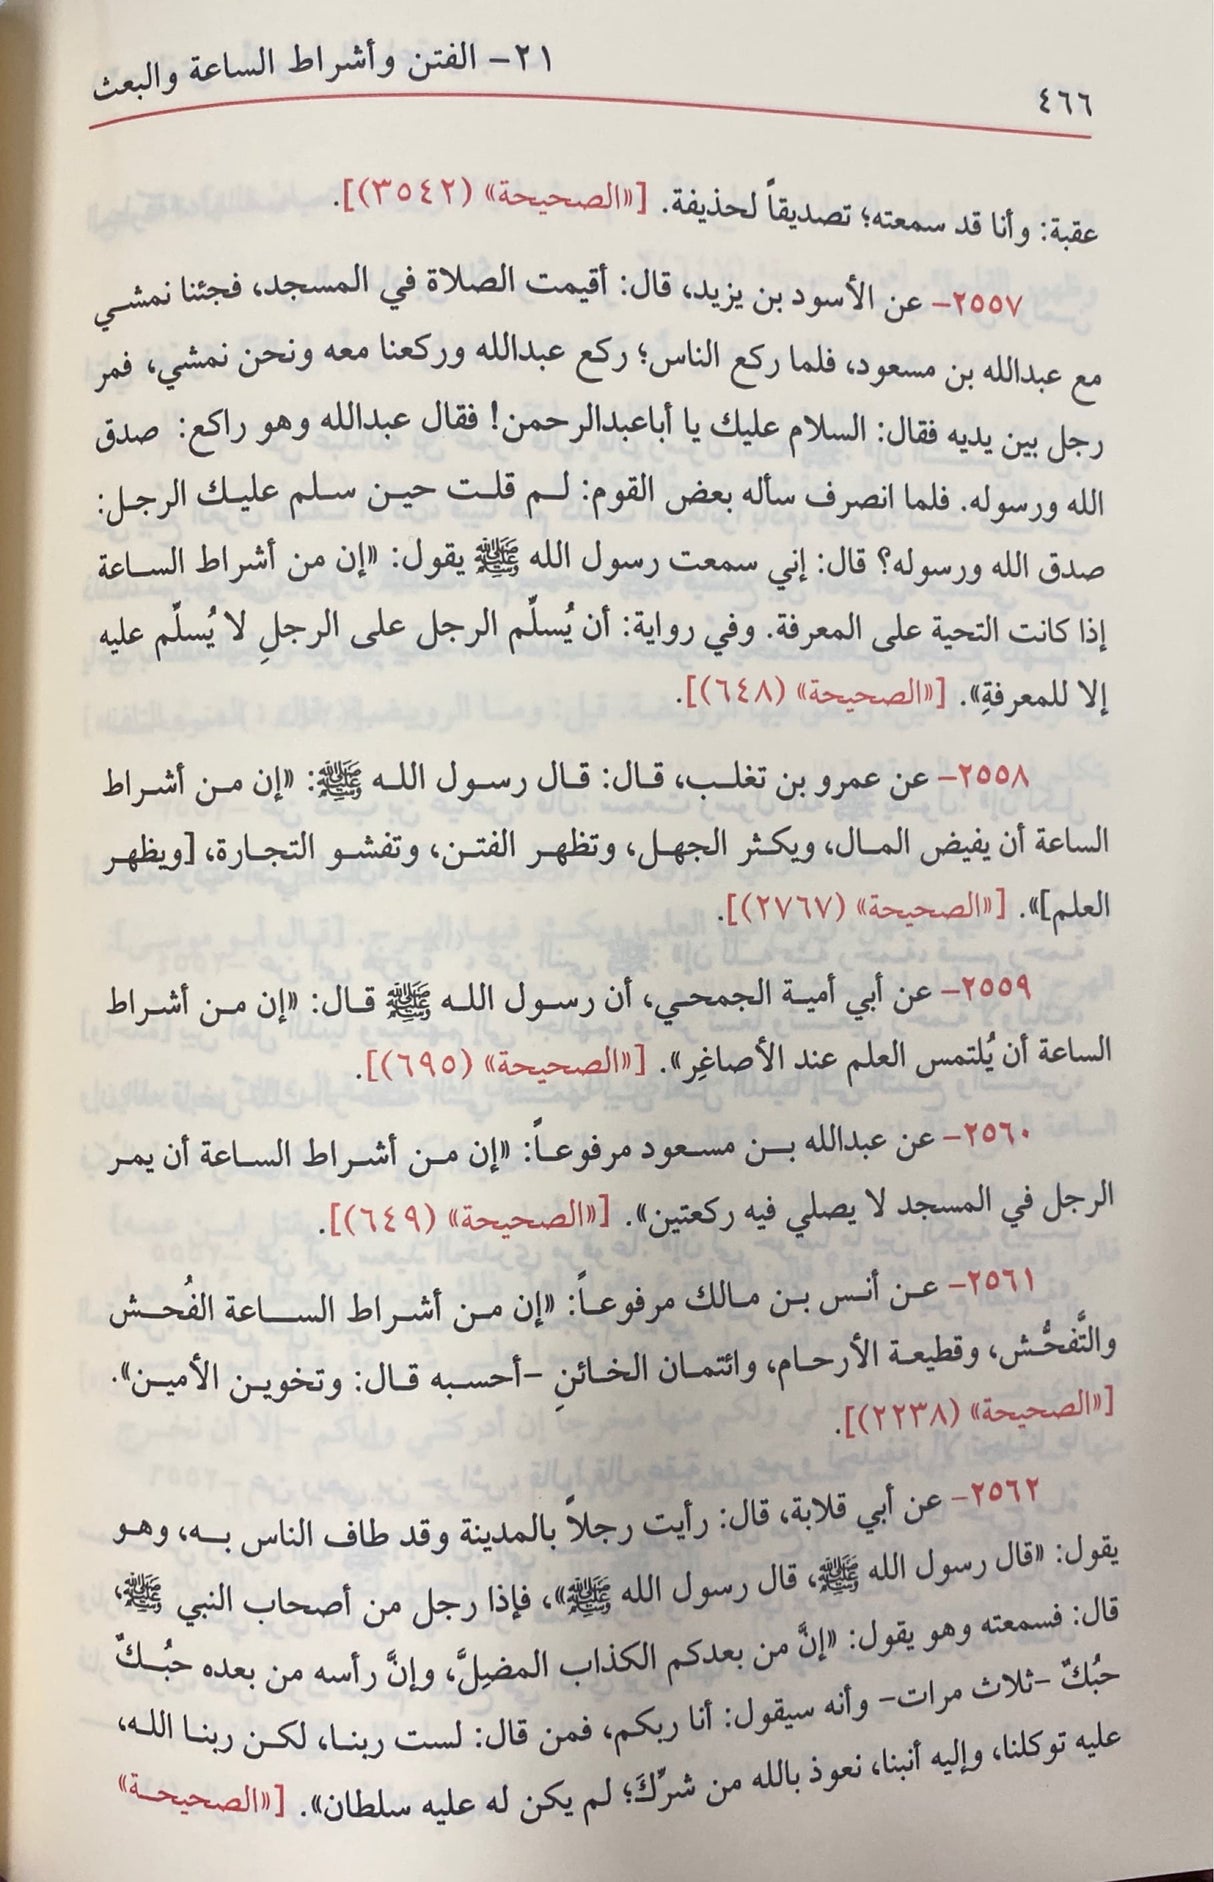 سلسلة الاحاديث الصحيحة مجردة عن التخريج Silsilah Al Ahadith As Sahiha